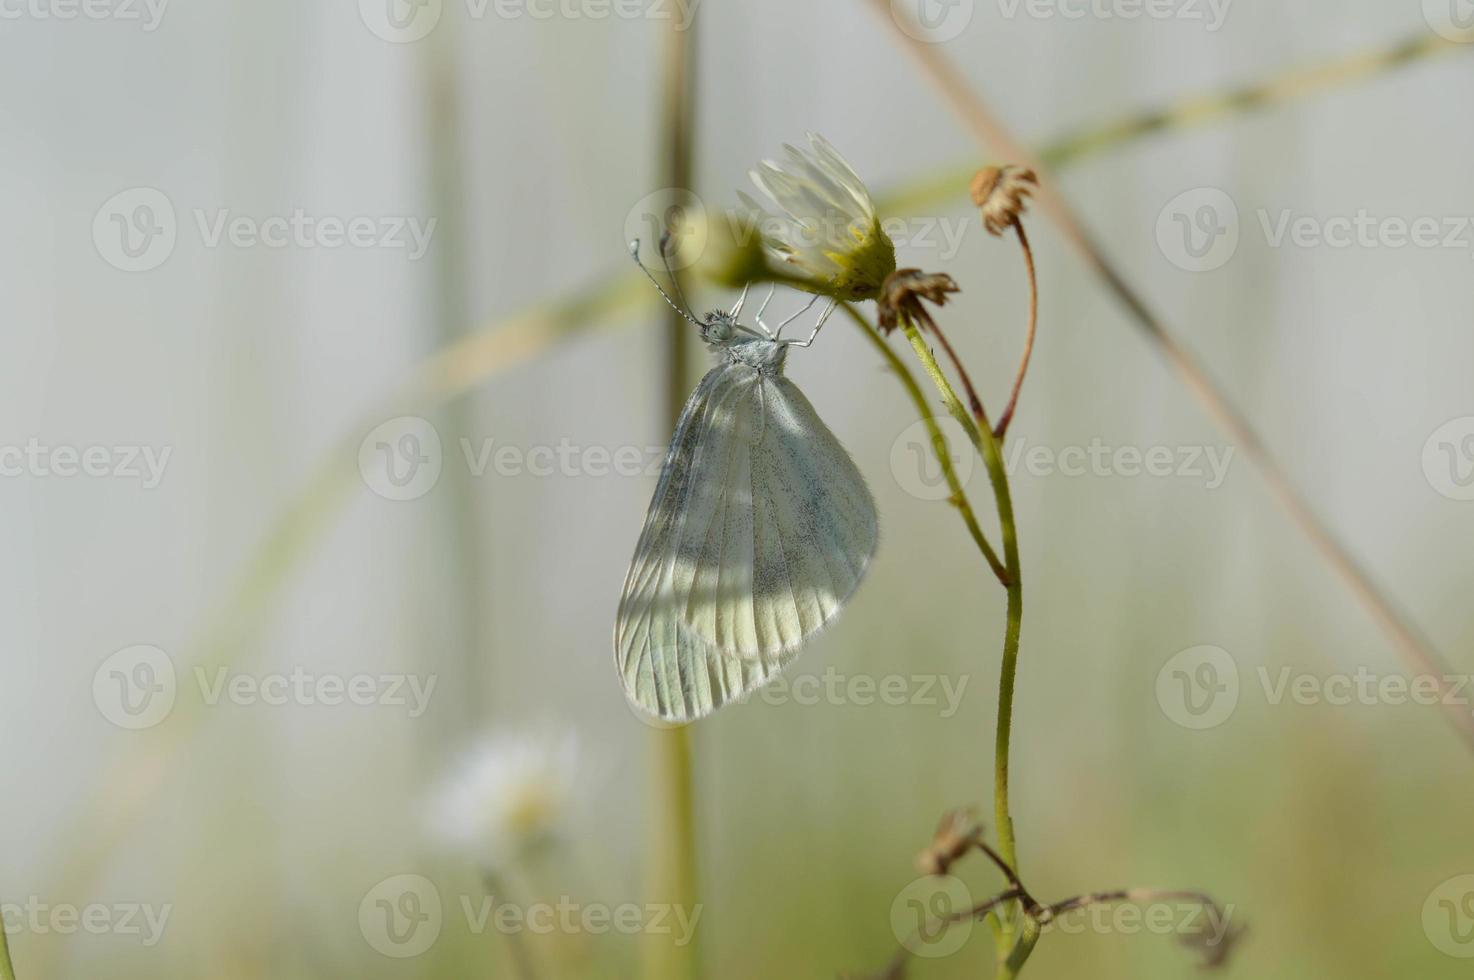 Holzweißer Schmetterling, kleiner Schmetterling auf einer Blume foto